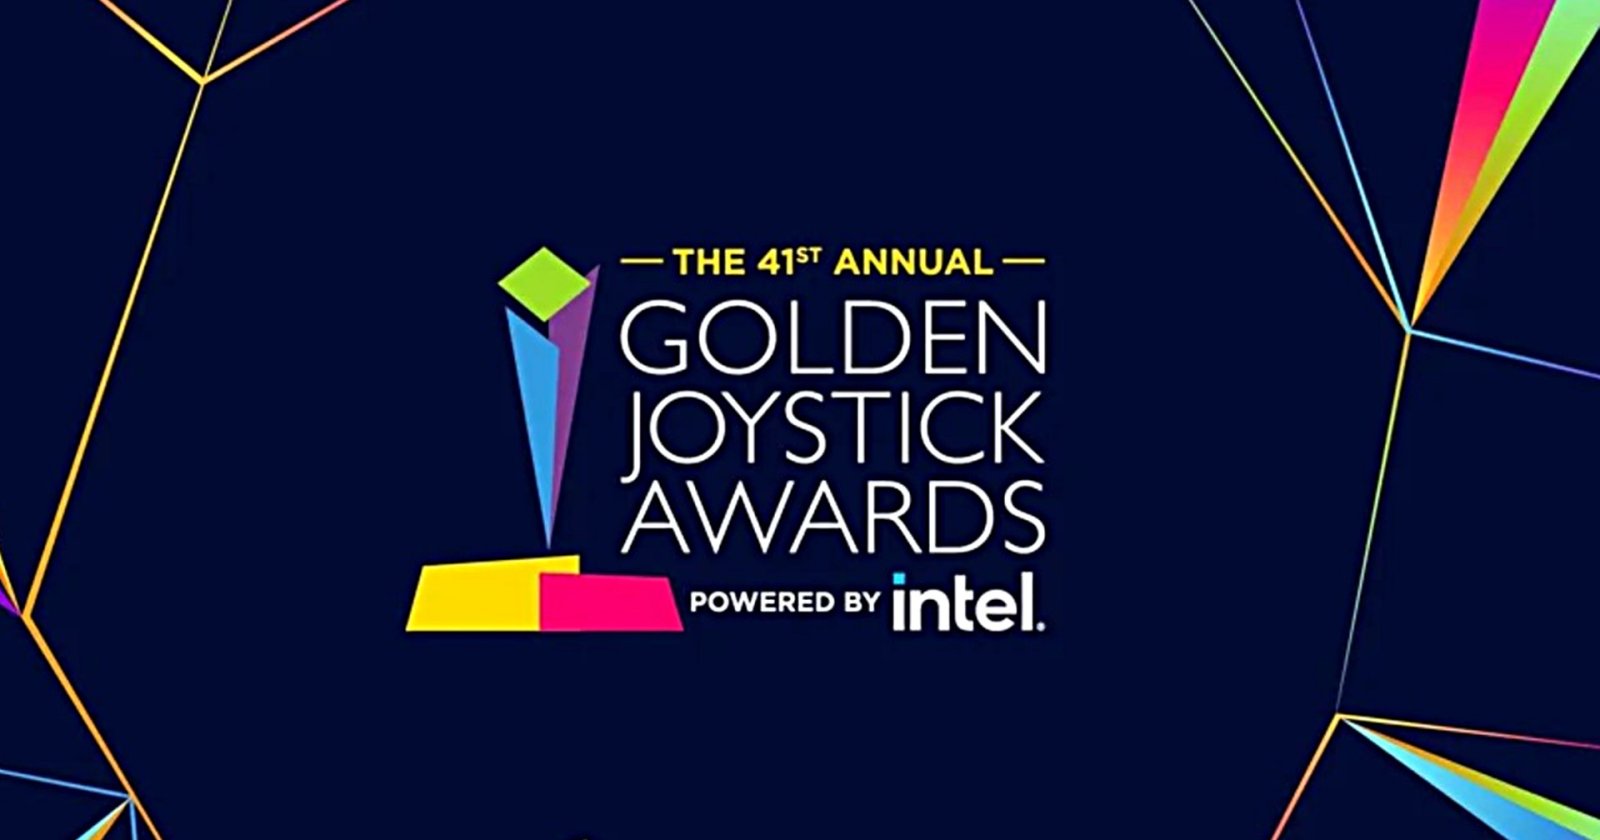 ประกาศผลผู้ชนะรางวัล “Golden Joystick Awards 2023” ที่เกมดังได้รางวัลตามคาด